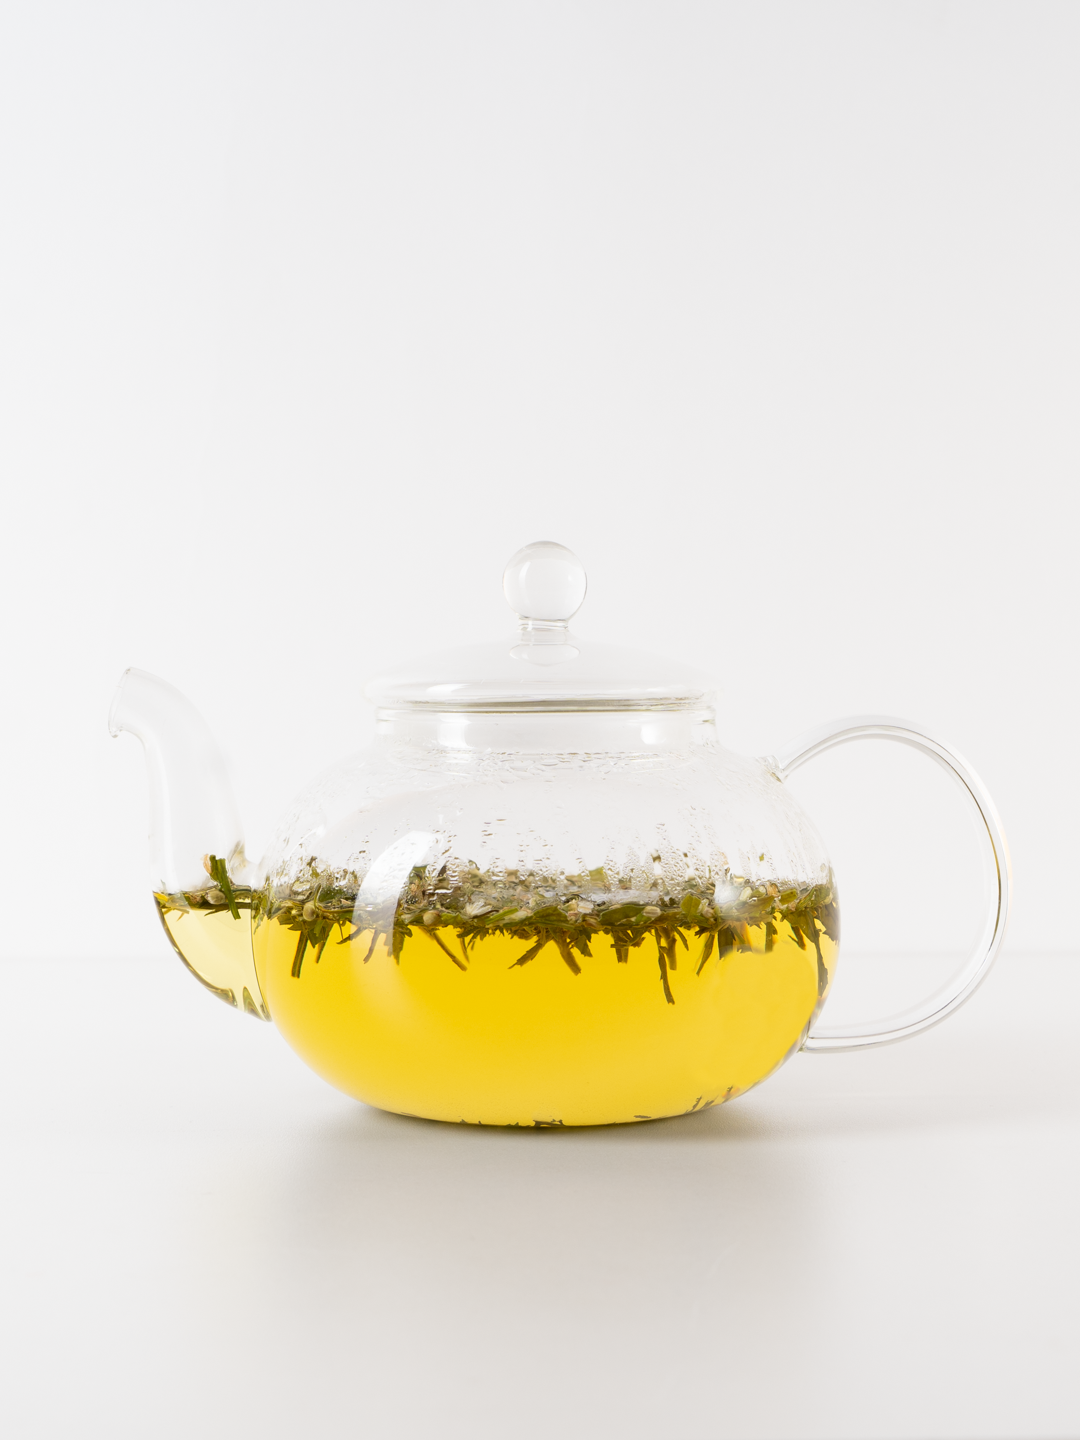 Конопляный чай "Doctor Dja" relax tea